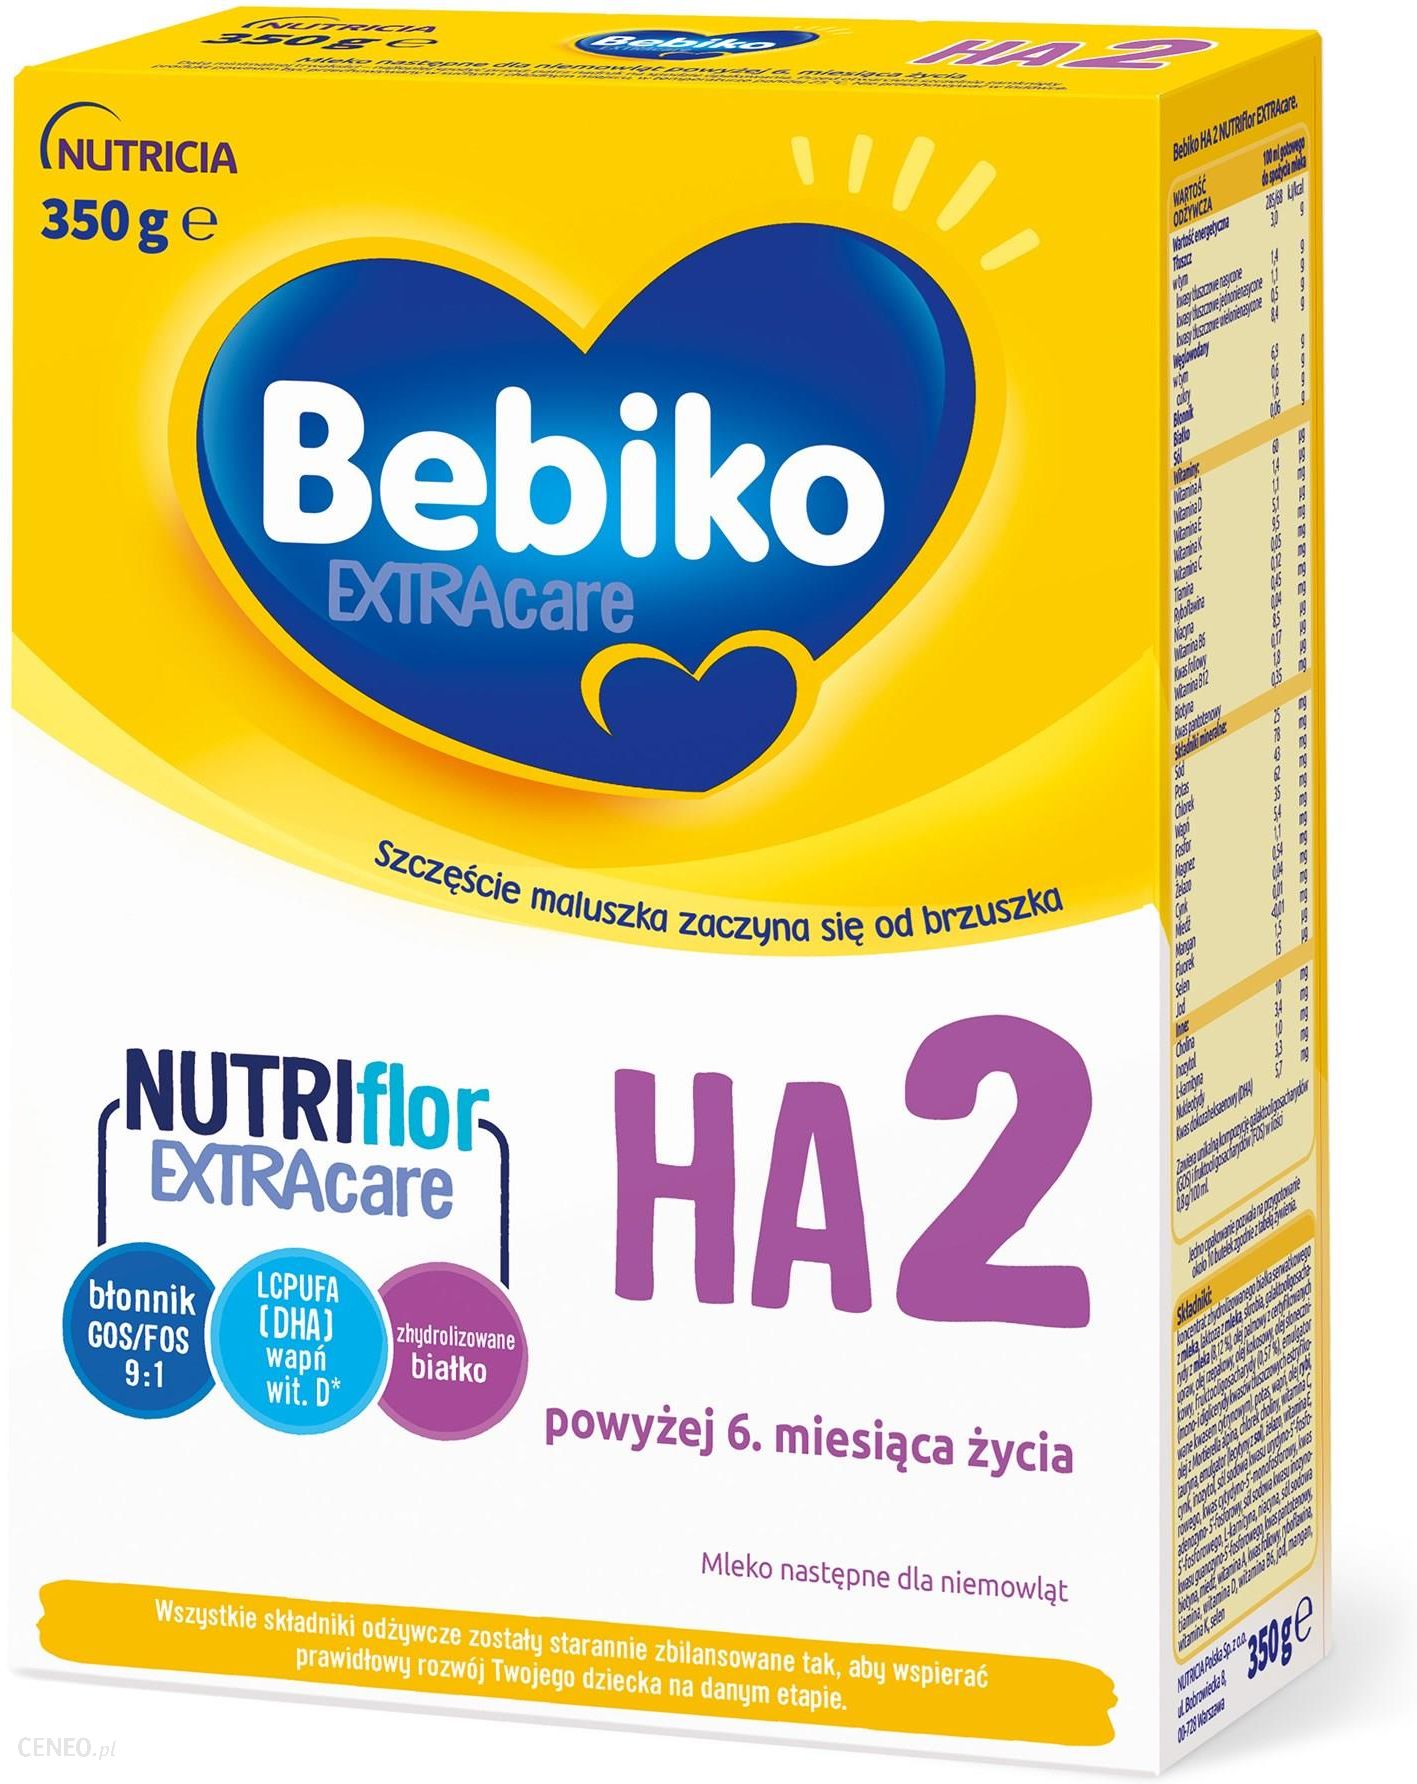  Bebiko Extra Care HA 2 Specjalistyczne hipoalergiczne mleko następne powyżej 6. miesiąca życia 350g